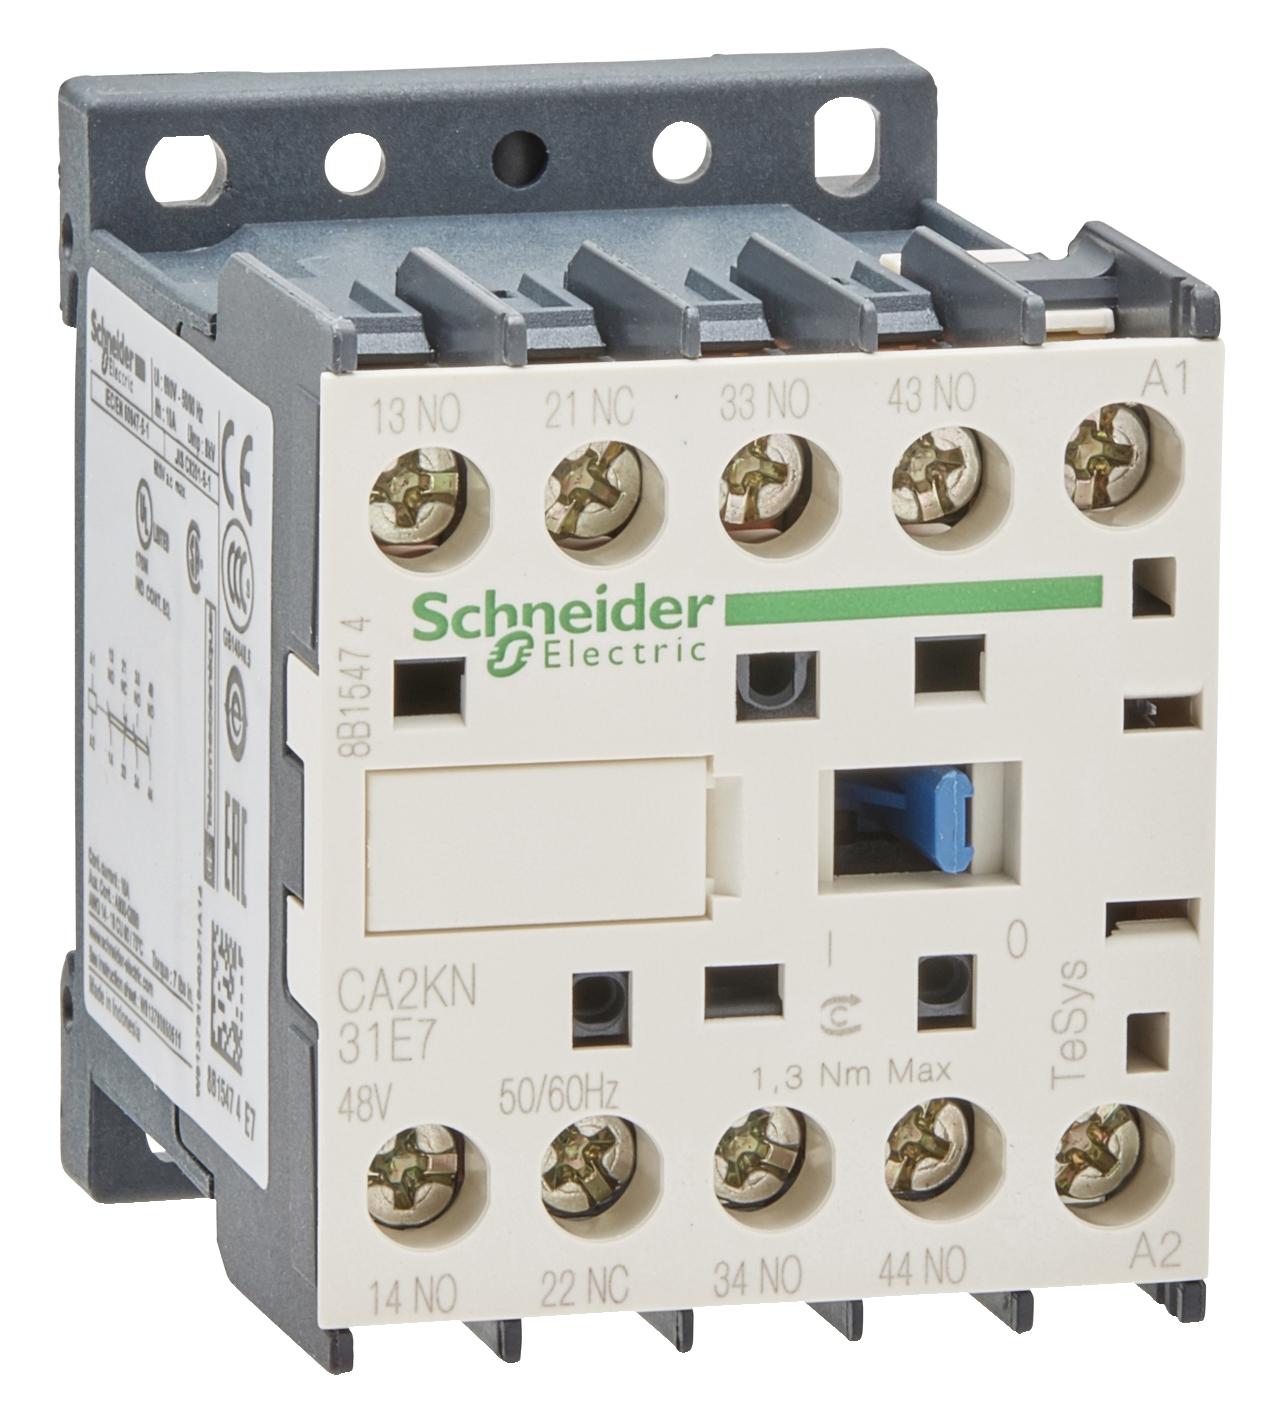 CA2KN31E7 CONTROL RELAY 3NO 1NC CONTACTS SCHNEIDER ELECTRIC